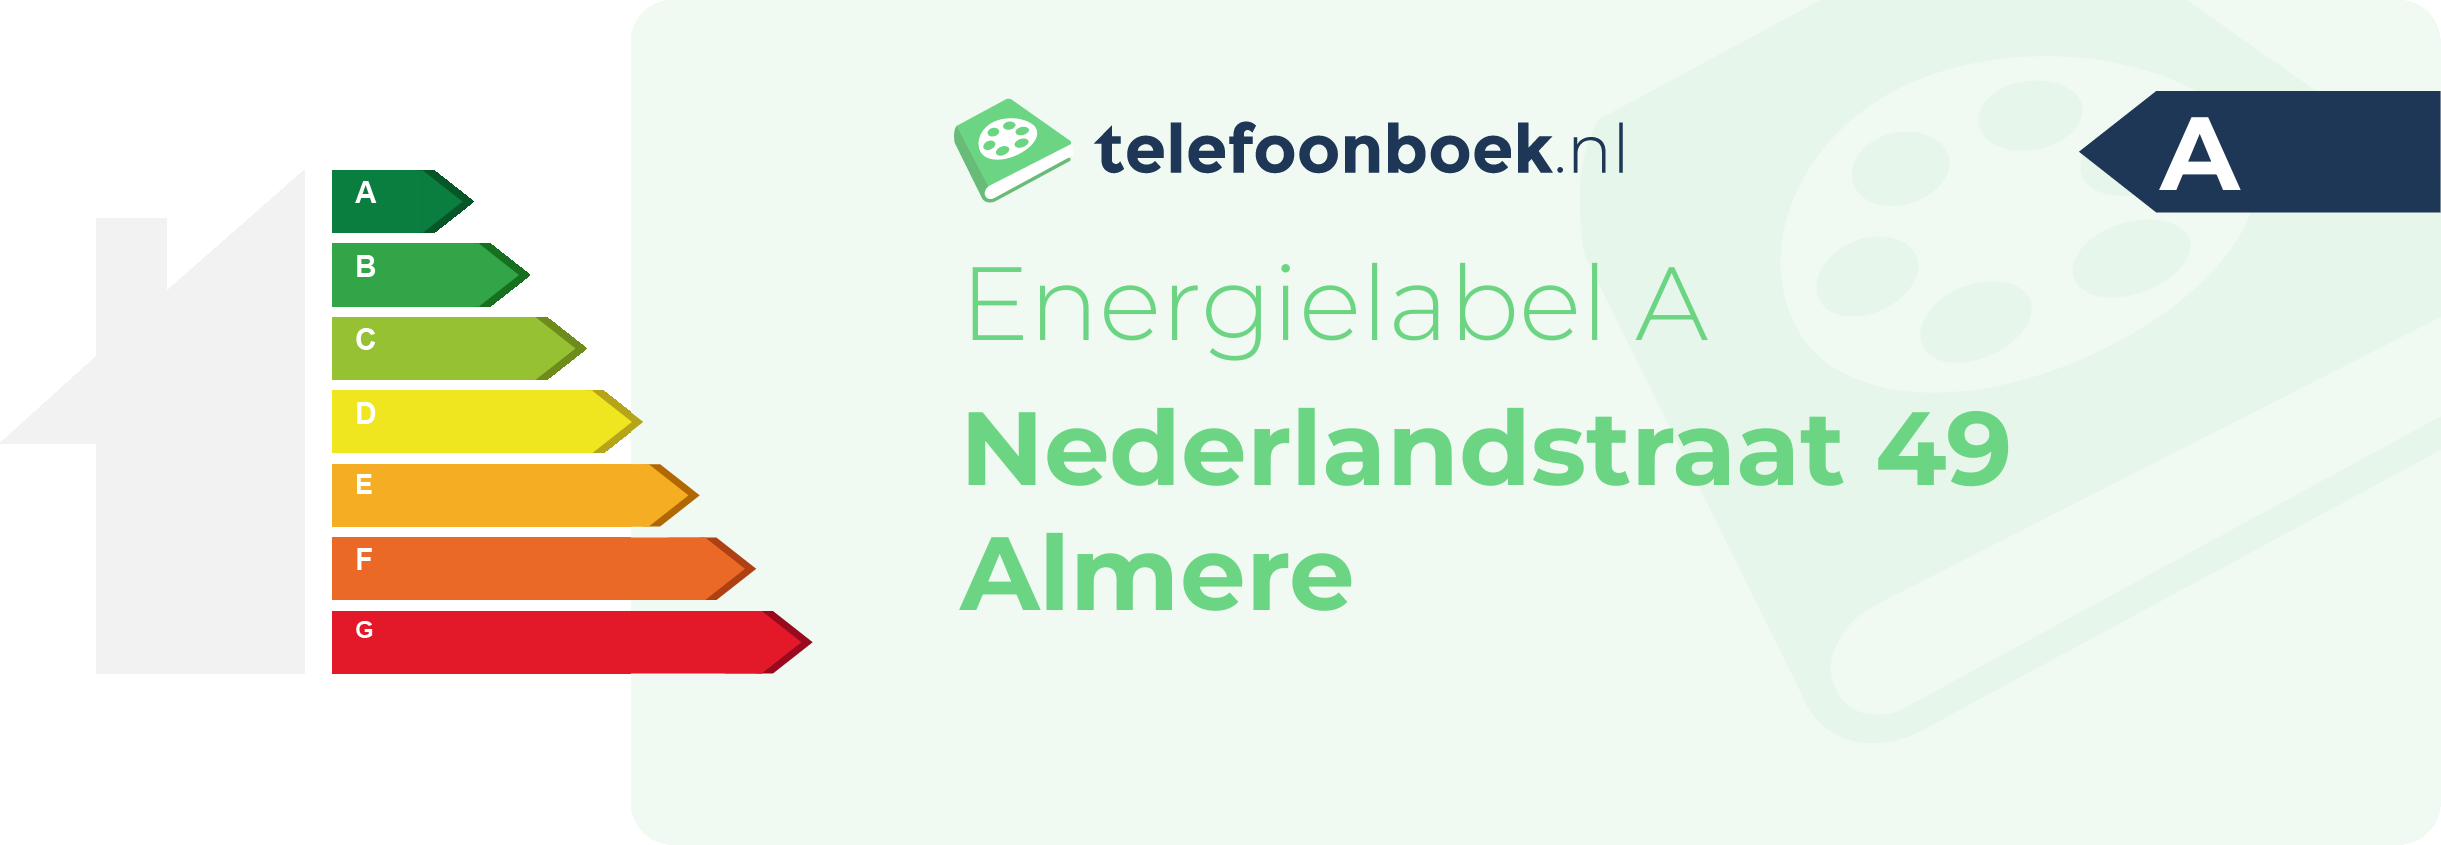 Energielabel Nederlandstraat 49 Almere